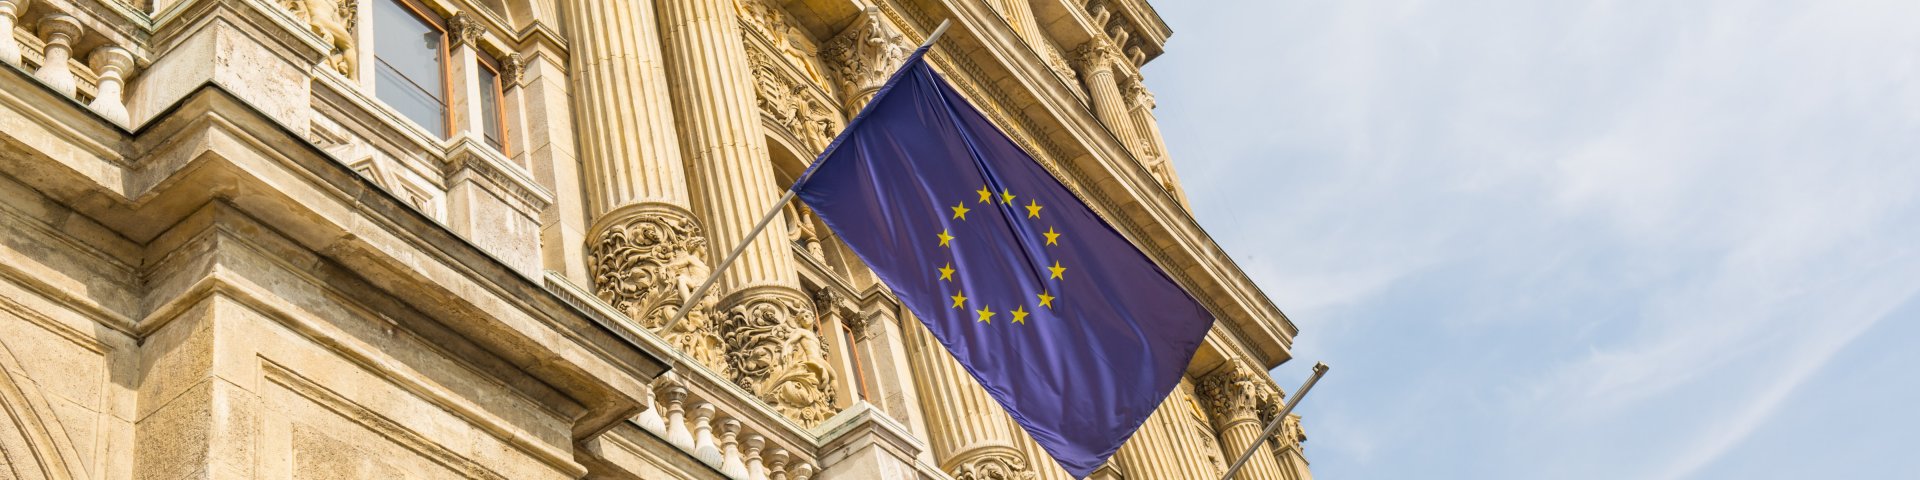 Building with a EU flag